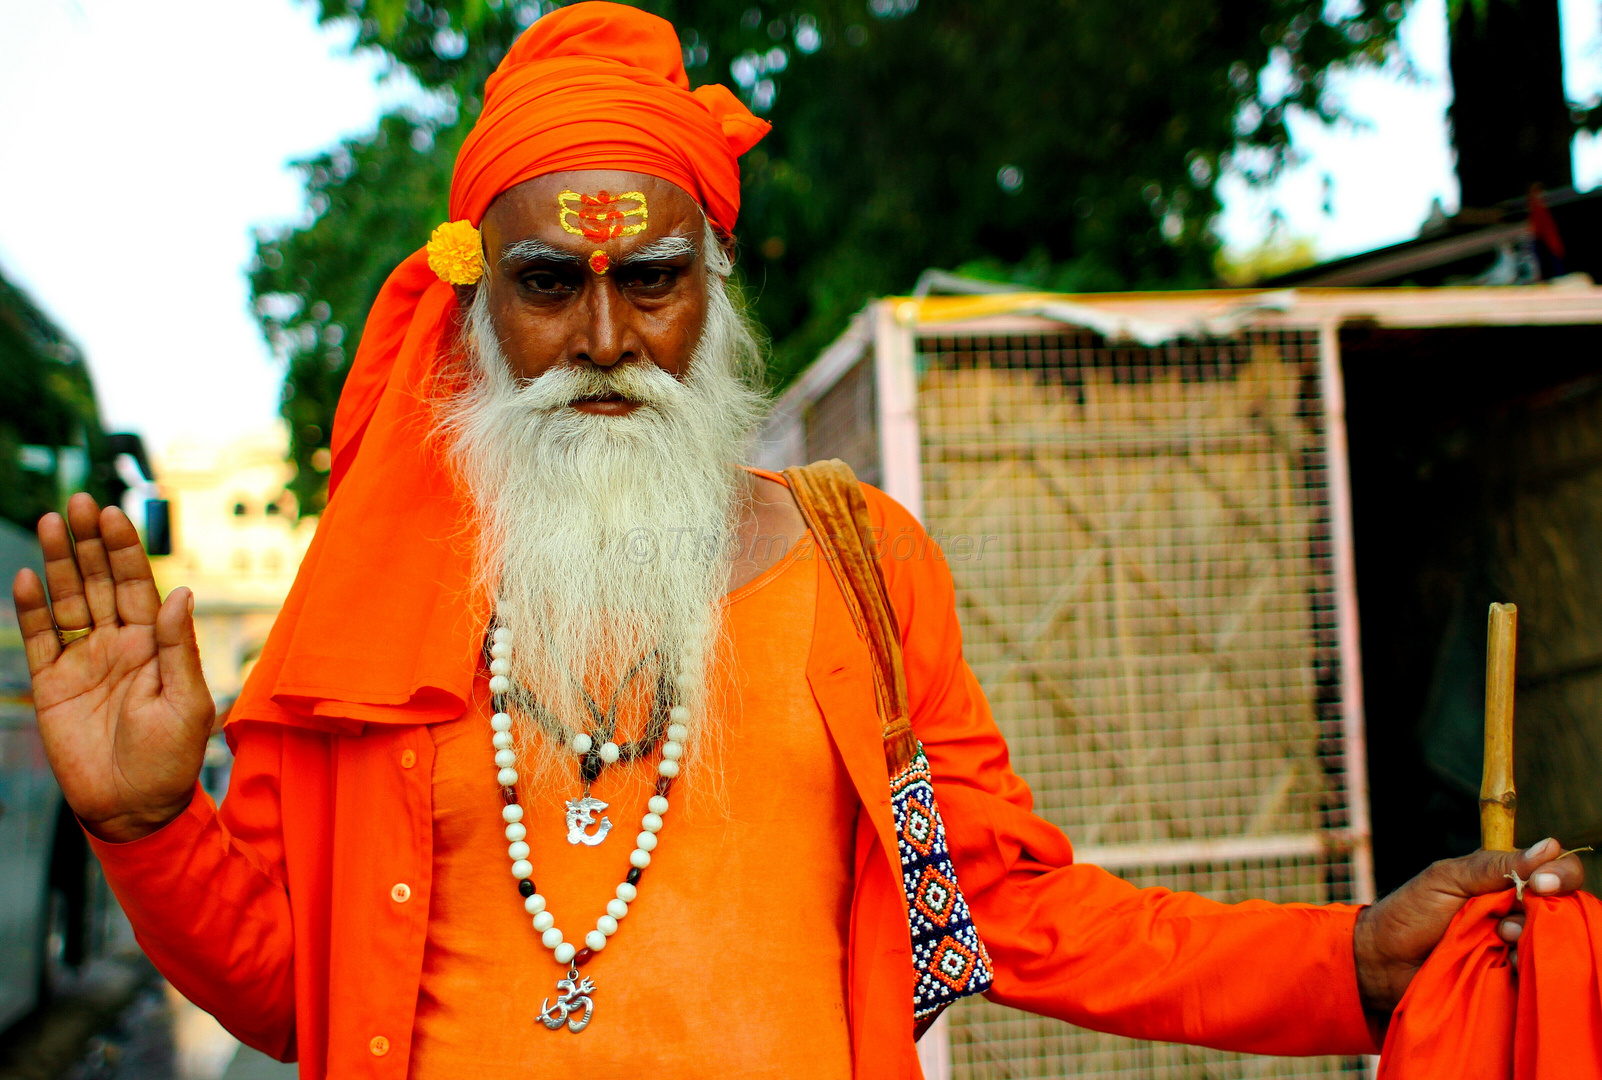 Exotisch und farbenfroh - Menschen in Rajasthan